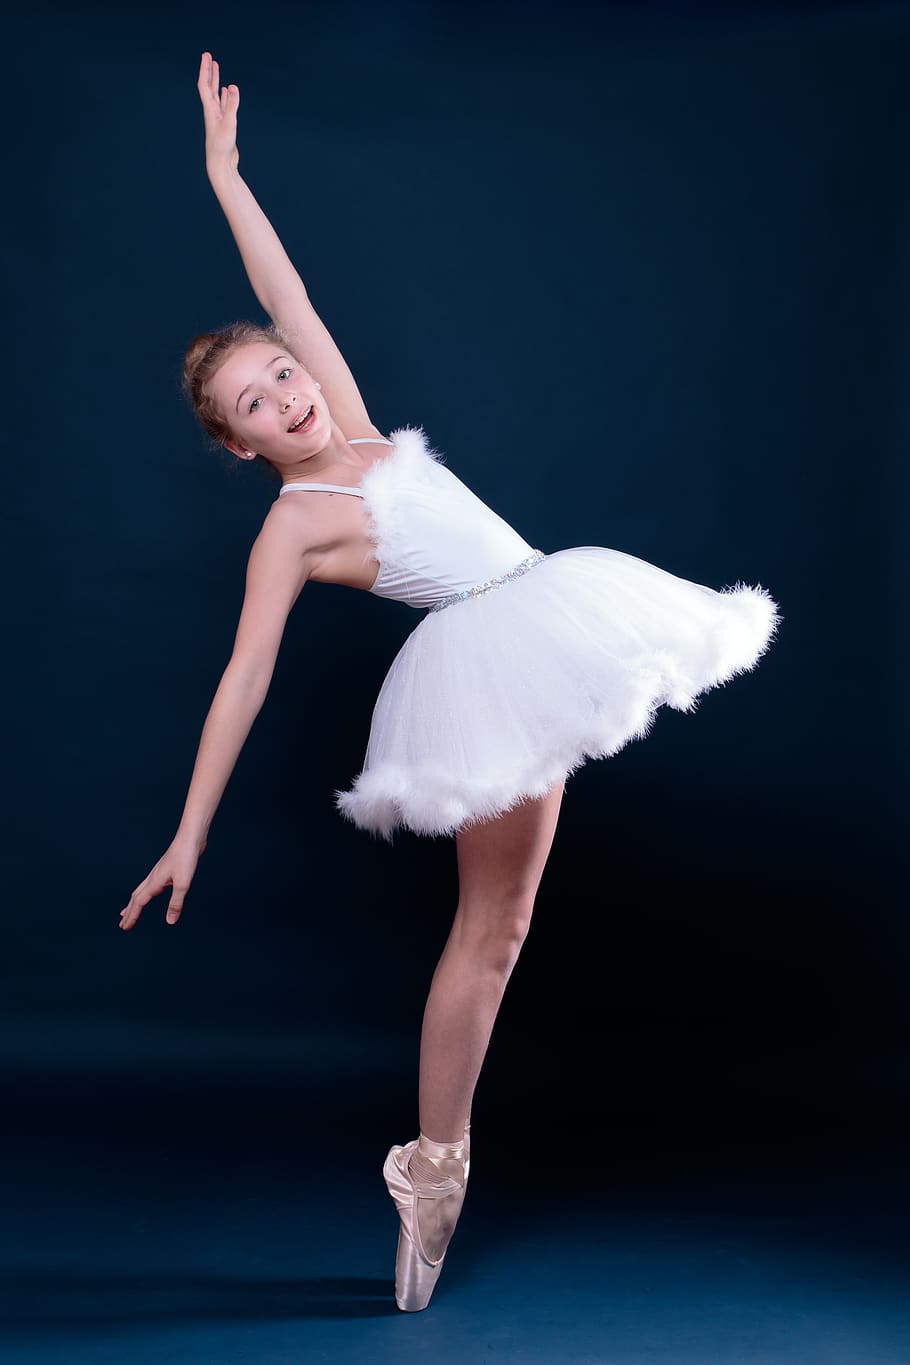 ballet, dancing, ballerina, child, teen, teenager, balance, sports, girl, ballet dancer